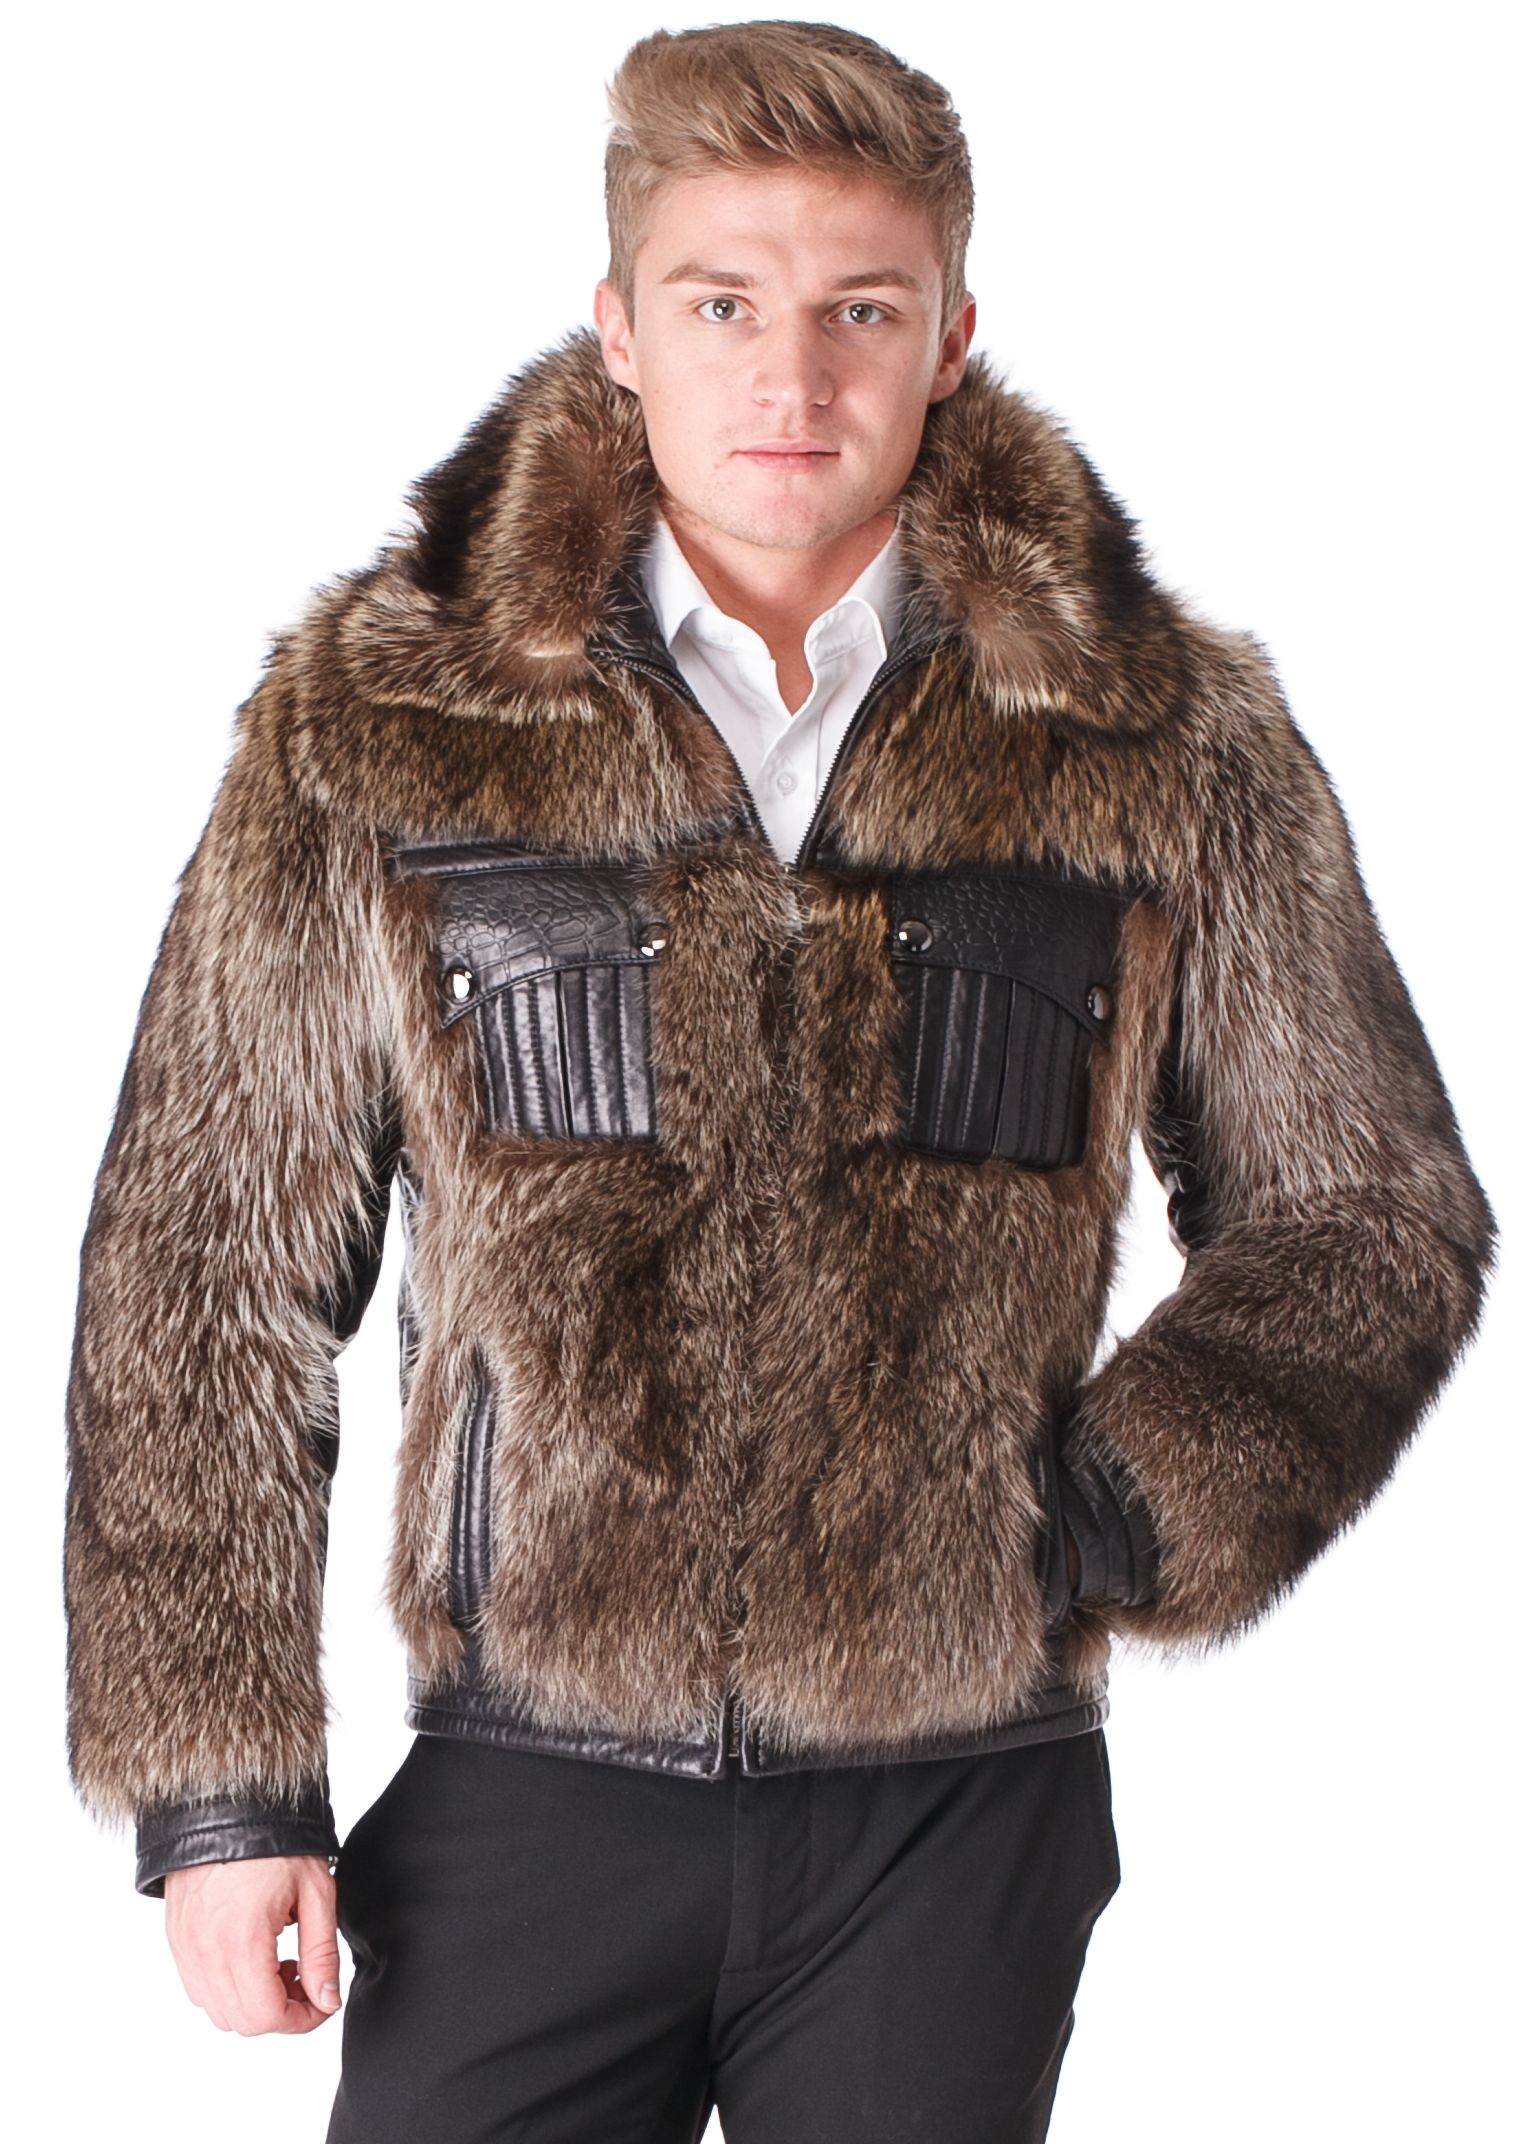 Куртка мужская с волком